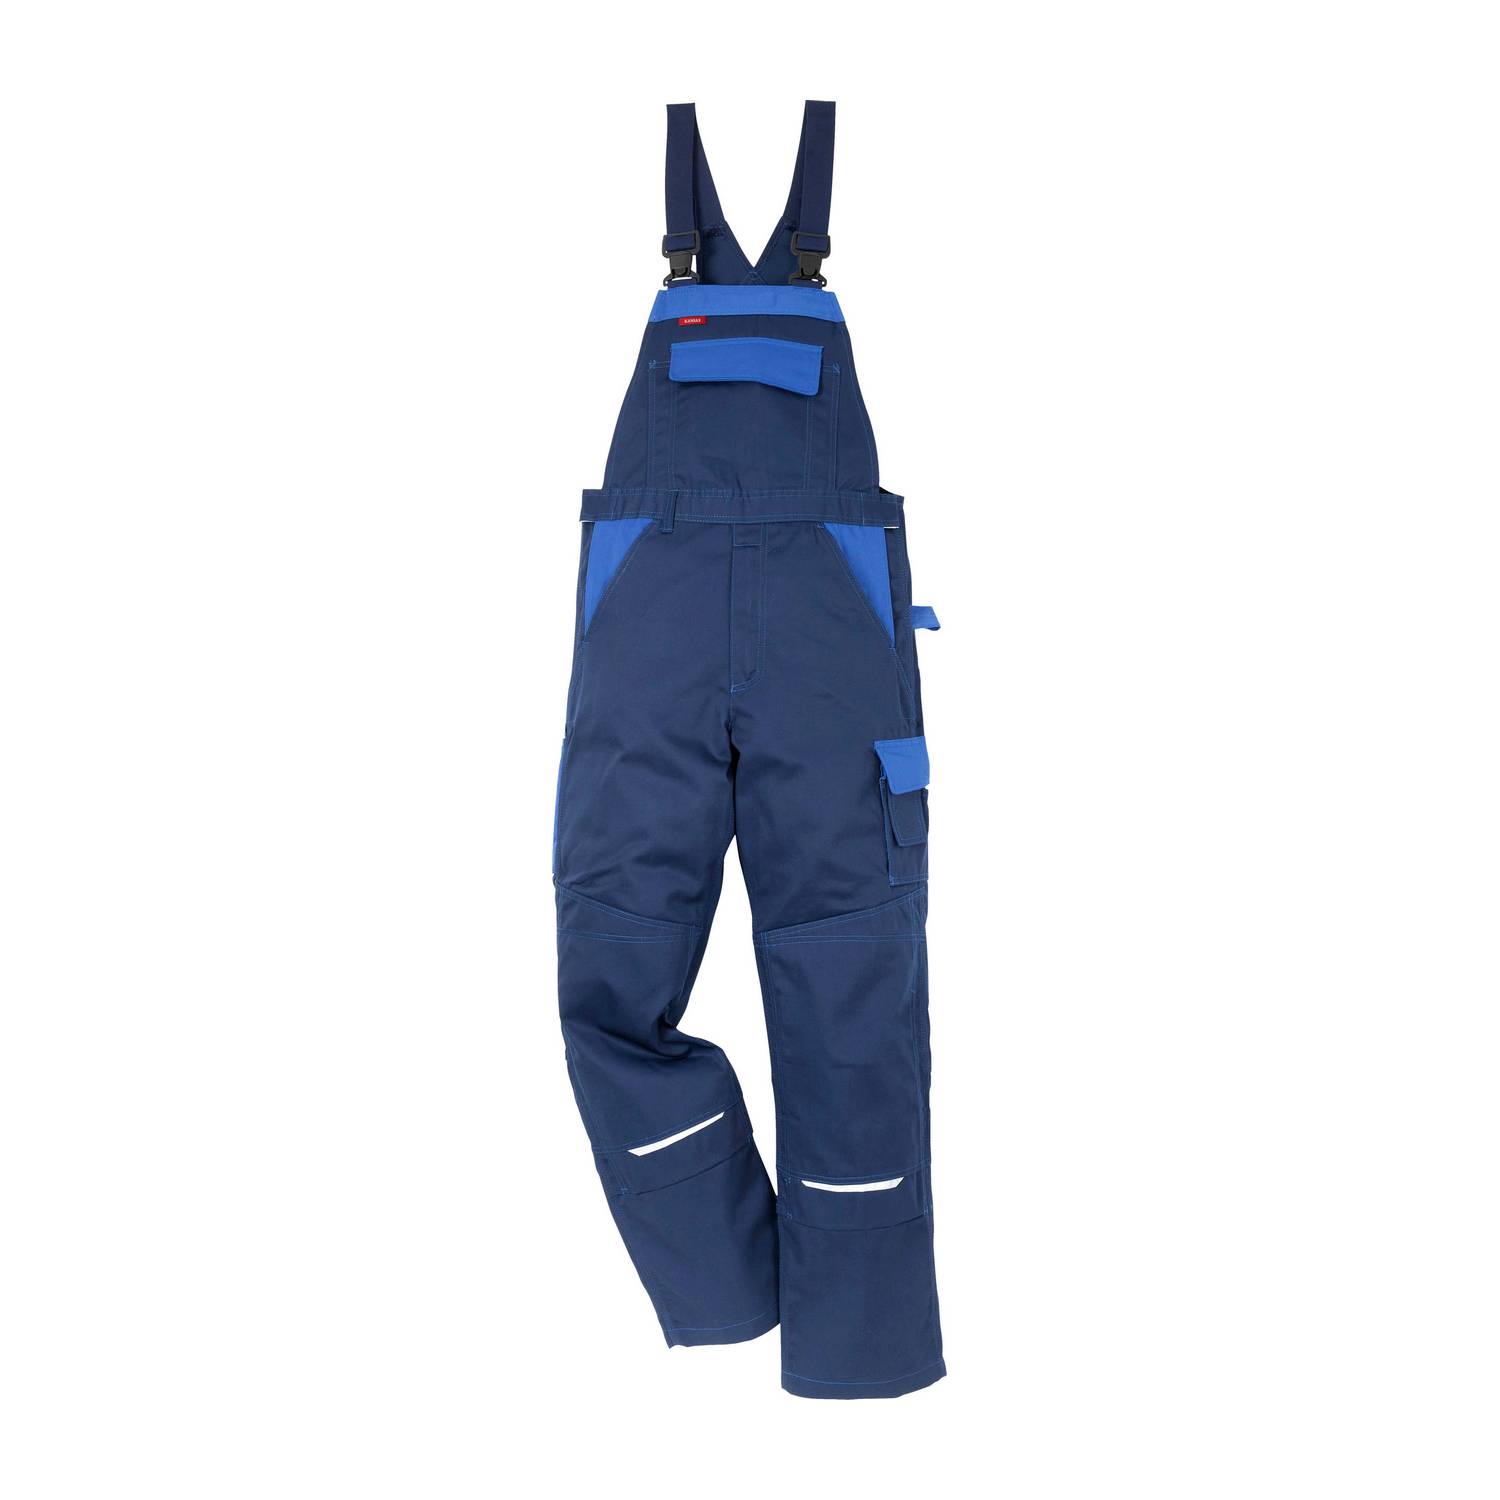 Fristads pamučne radne hlače s naramenicama 100812-576